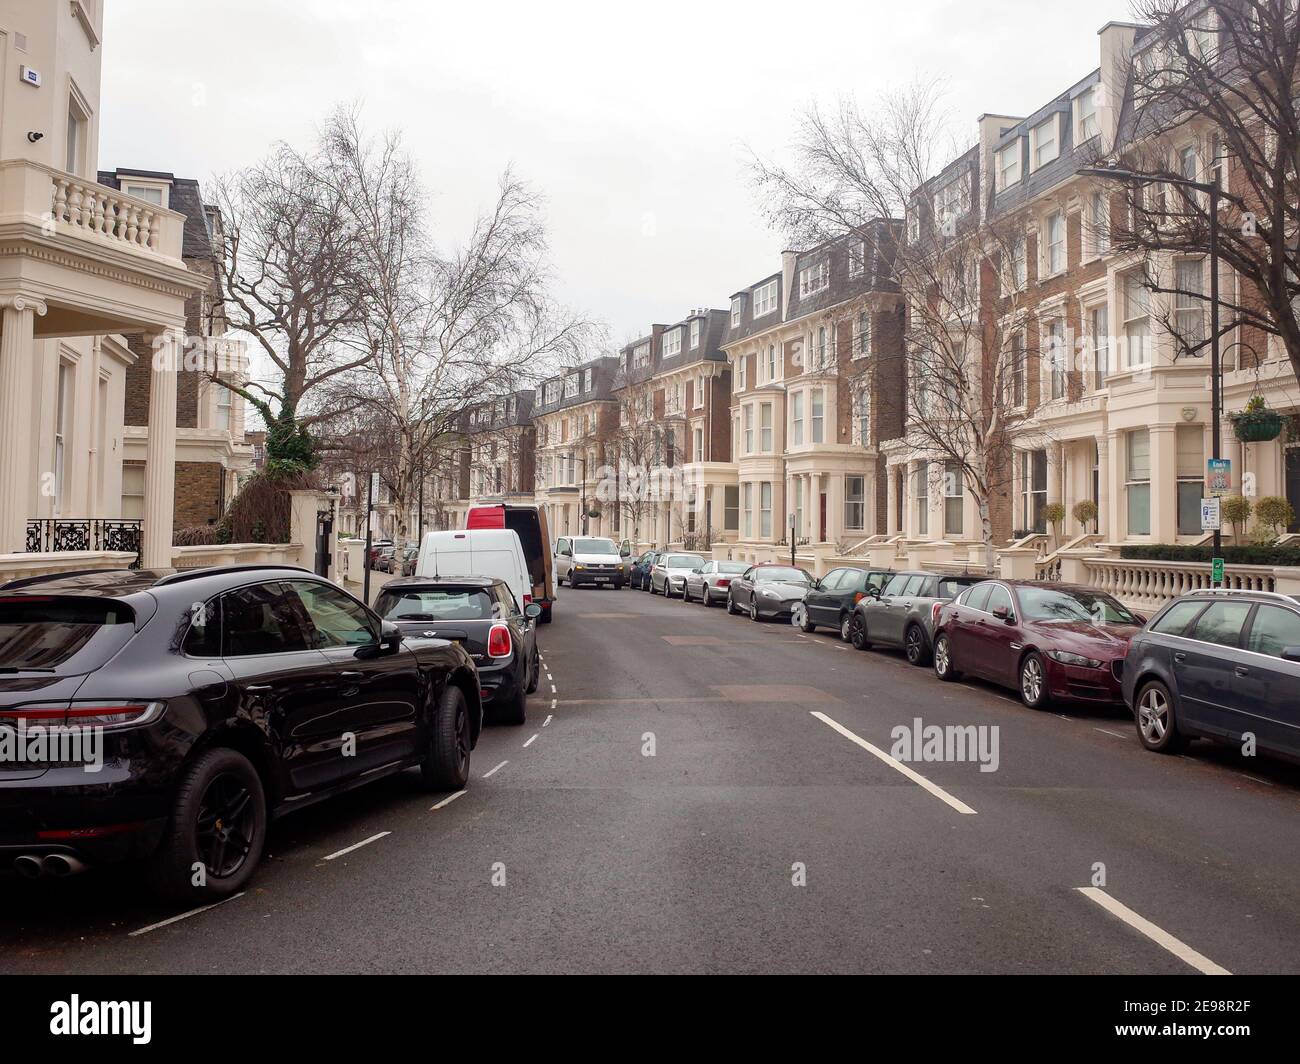 Londres - voitures chères garées sur la rue haut de gamme dans la région de Maida Vale de Paddington, dans le nord-ouest de Londres Banque D'Images